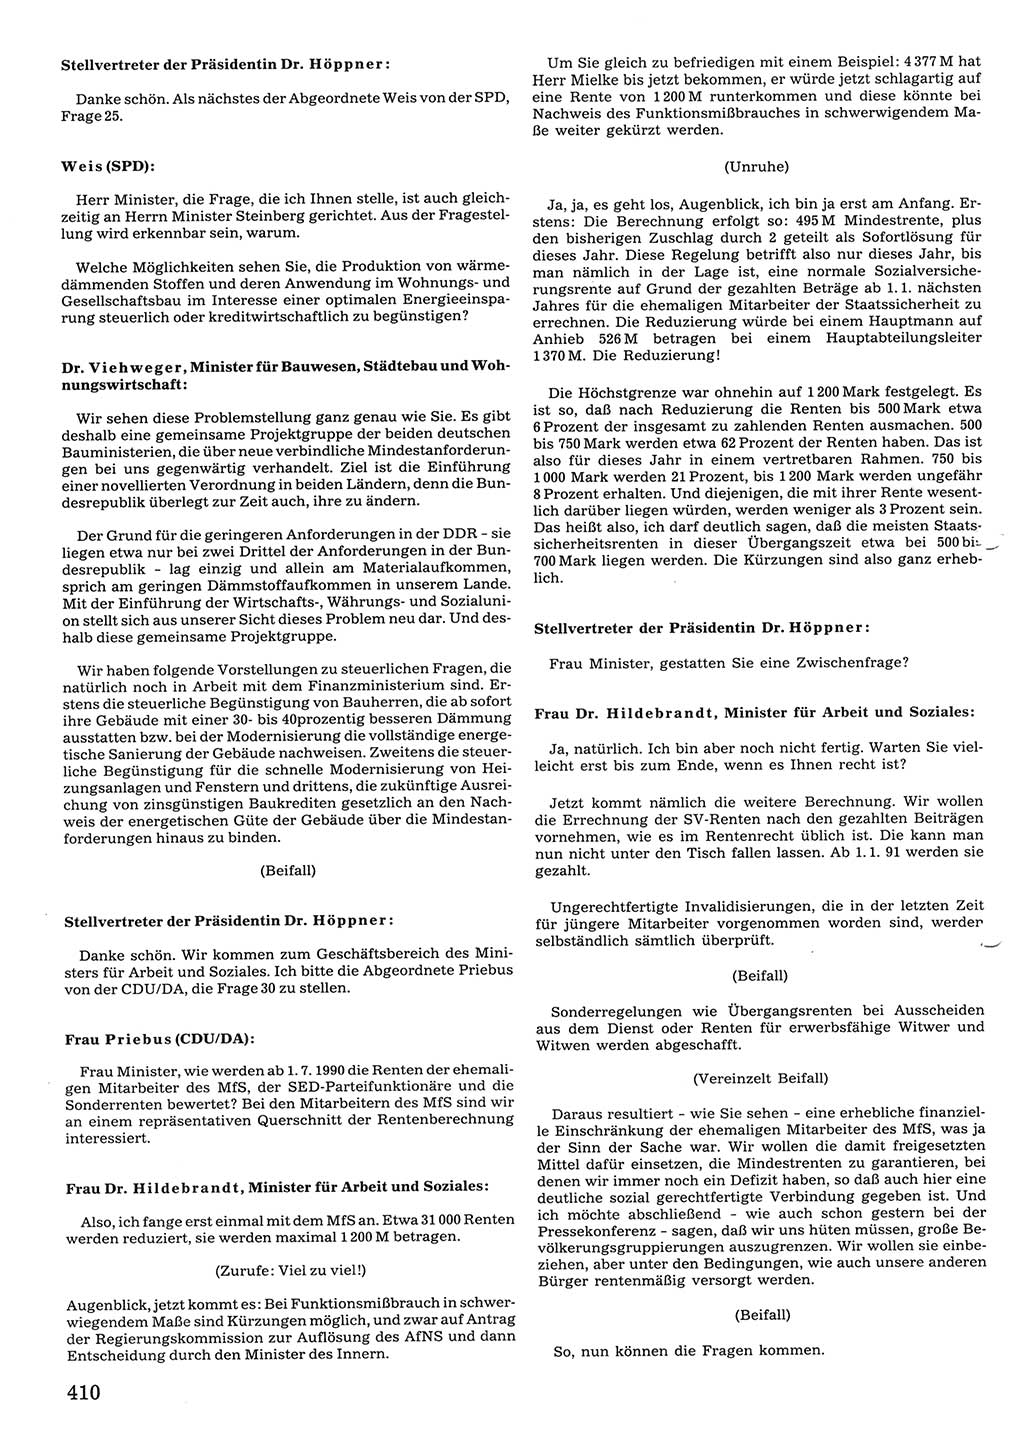 Tagungen der Volkskammer (VK) der Deutschen Demokratischen Republik (DDR), 10. Wahlperiode 1990, Seite 410 (VK. DDR 10. WP. 1990, Prot. Tg. 1-38, 5.4.-2.10.1990, S. 410)